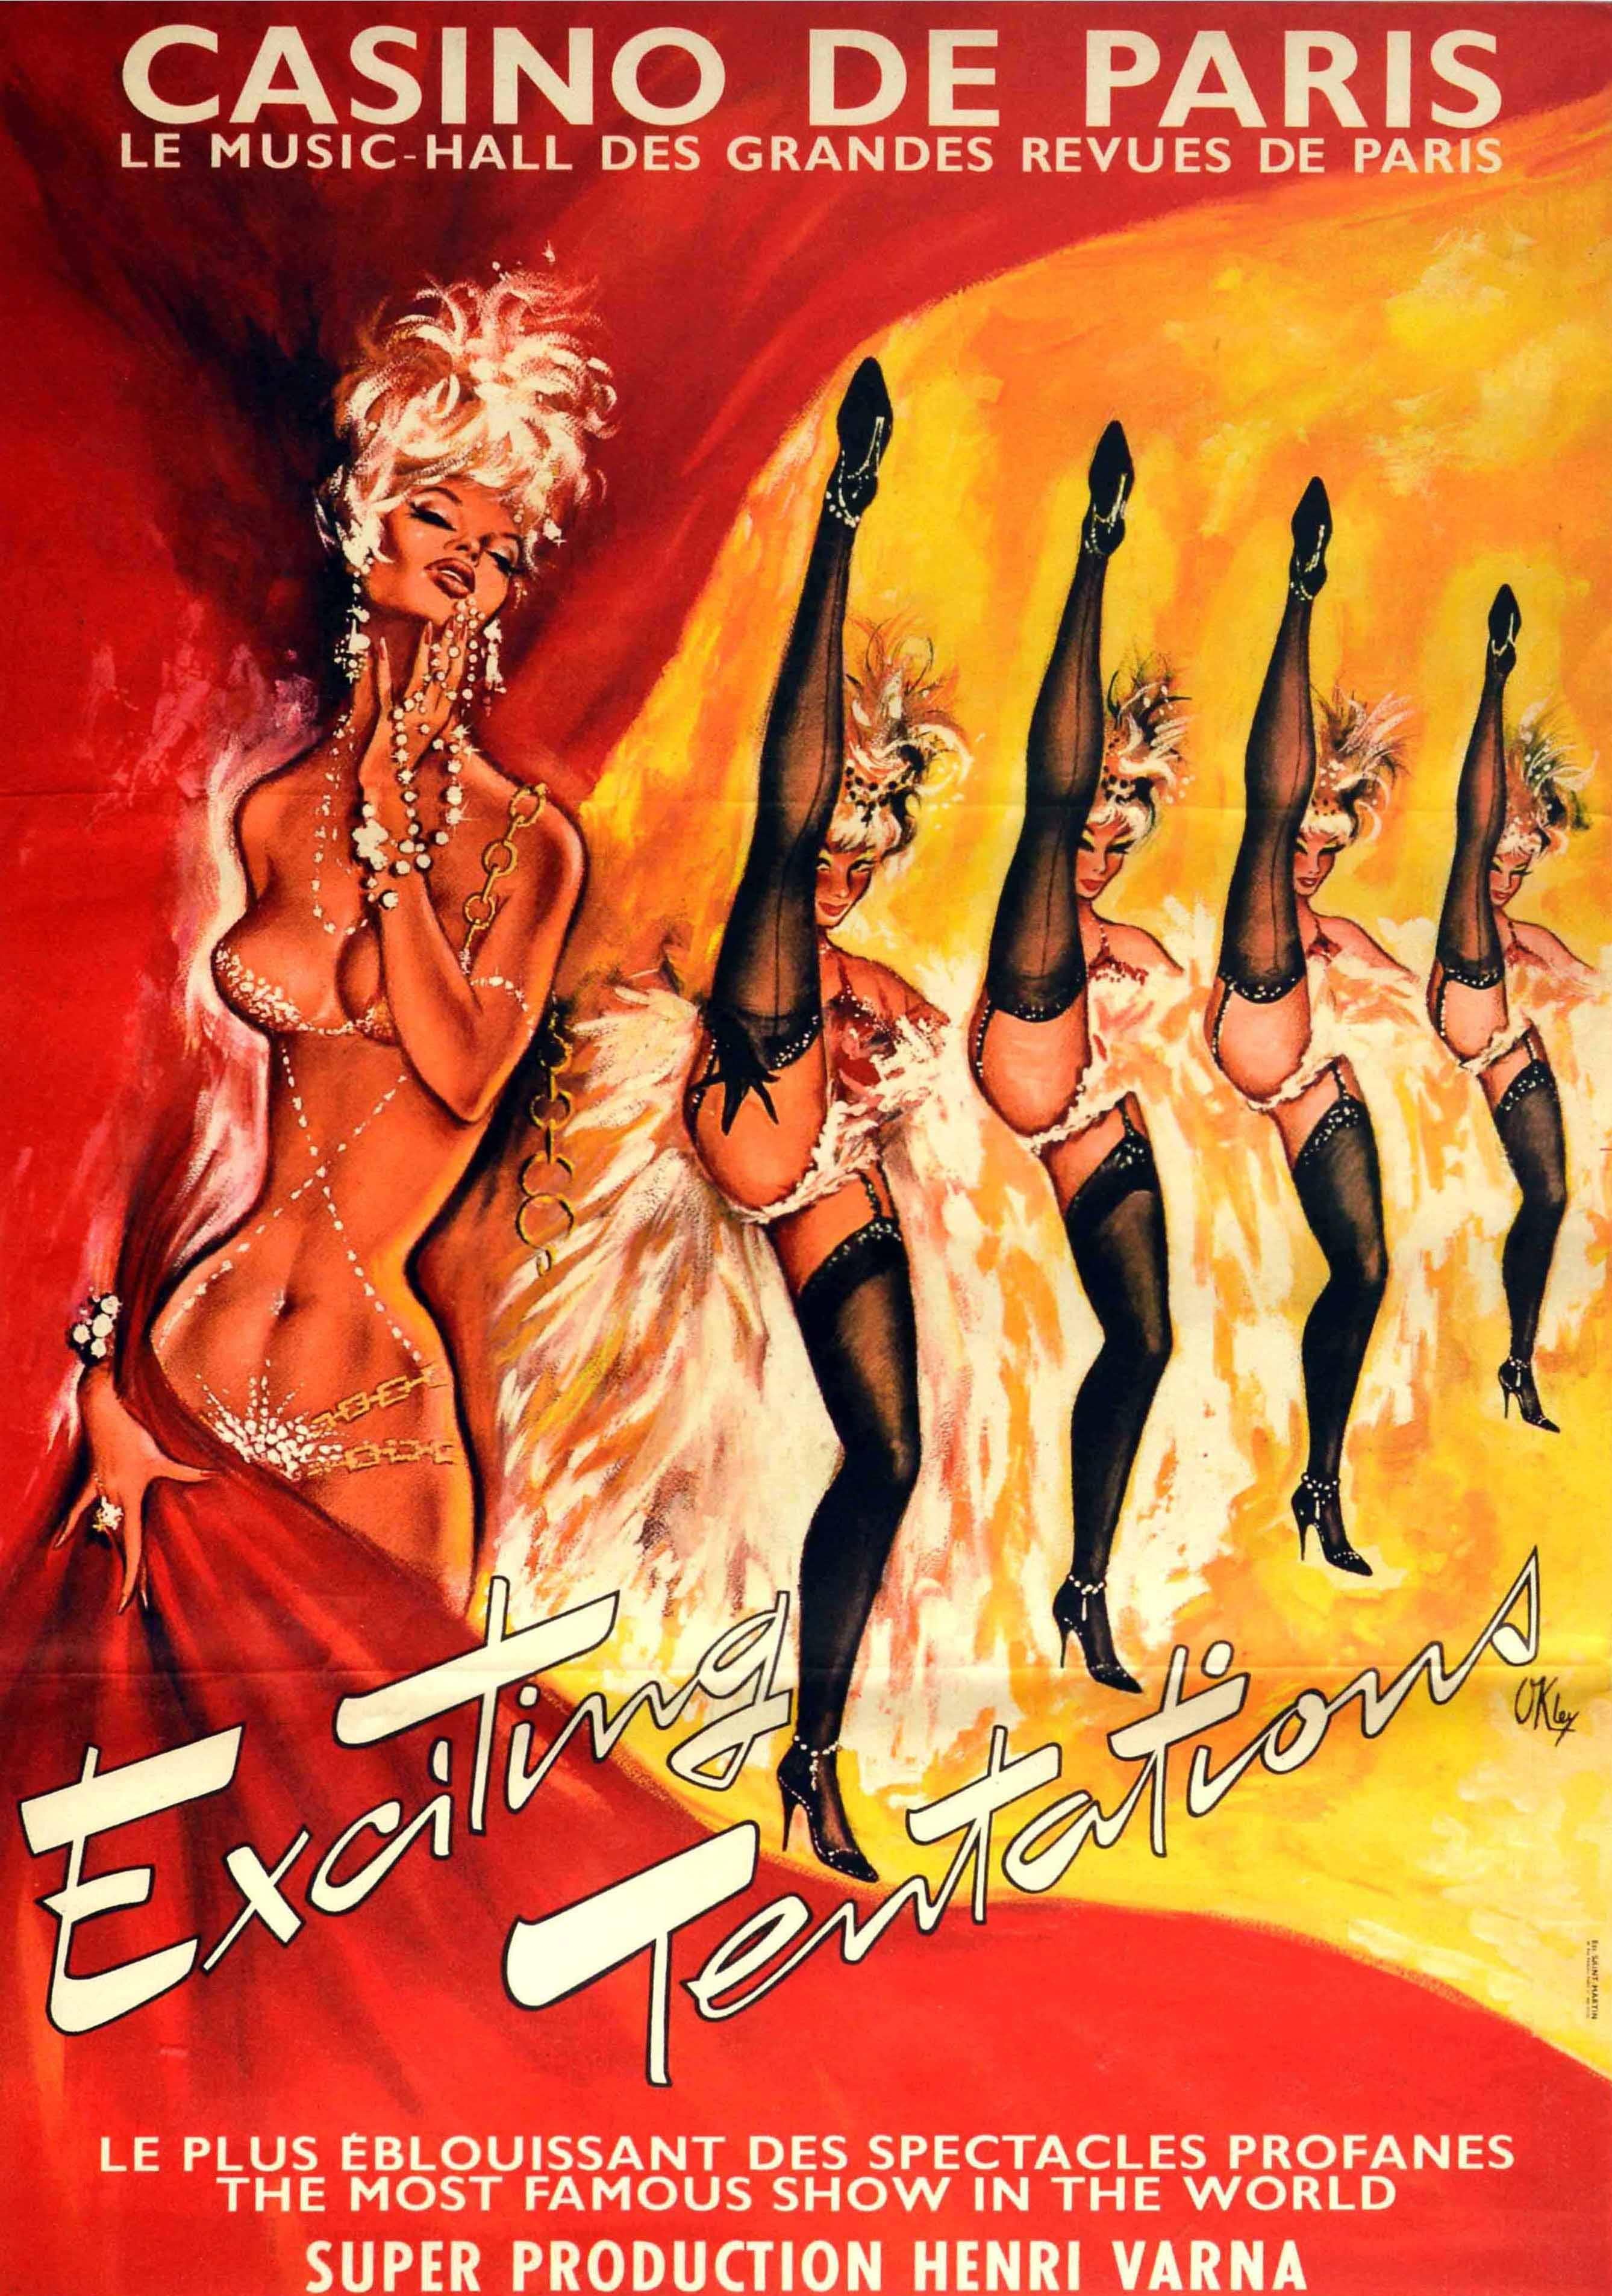 Pierre Gilardeau Print - Original Vintage Poster Casino De Paris Exciting Tentations Cabaret Show Can-Can